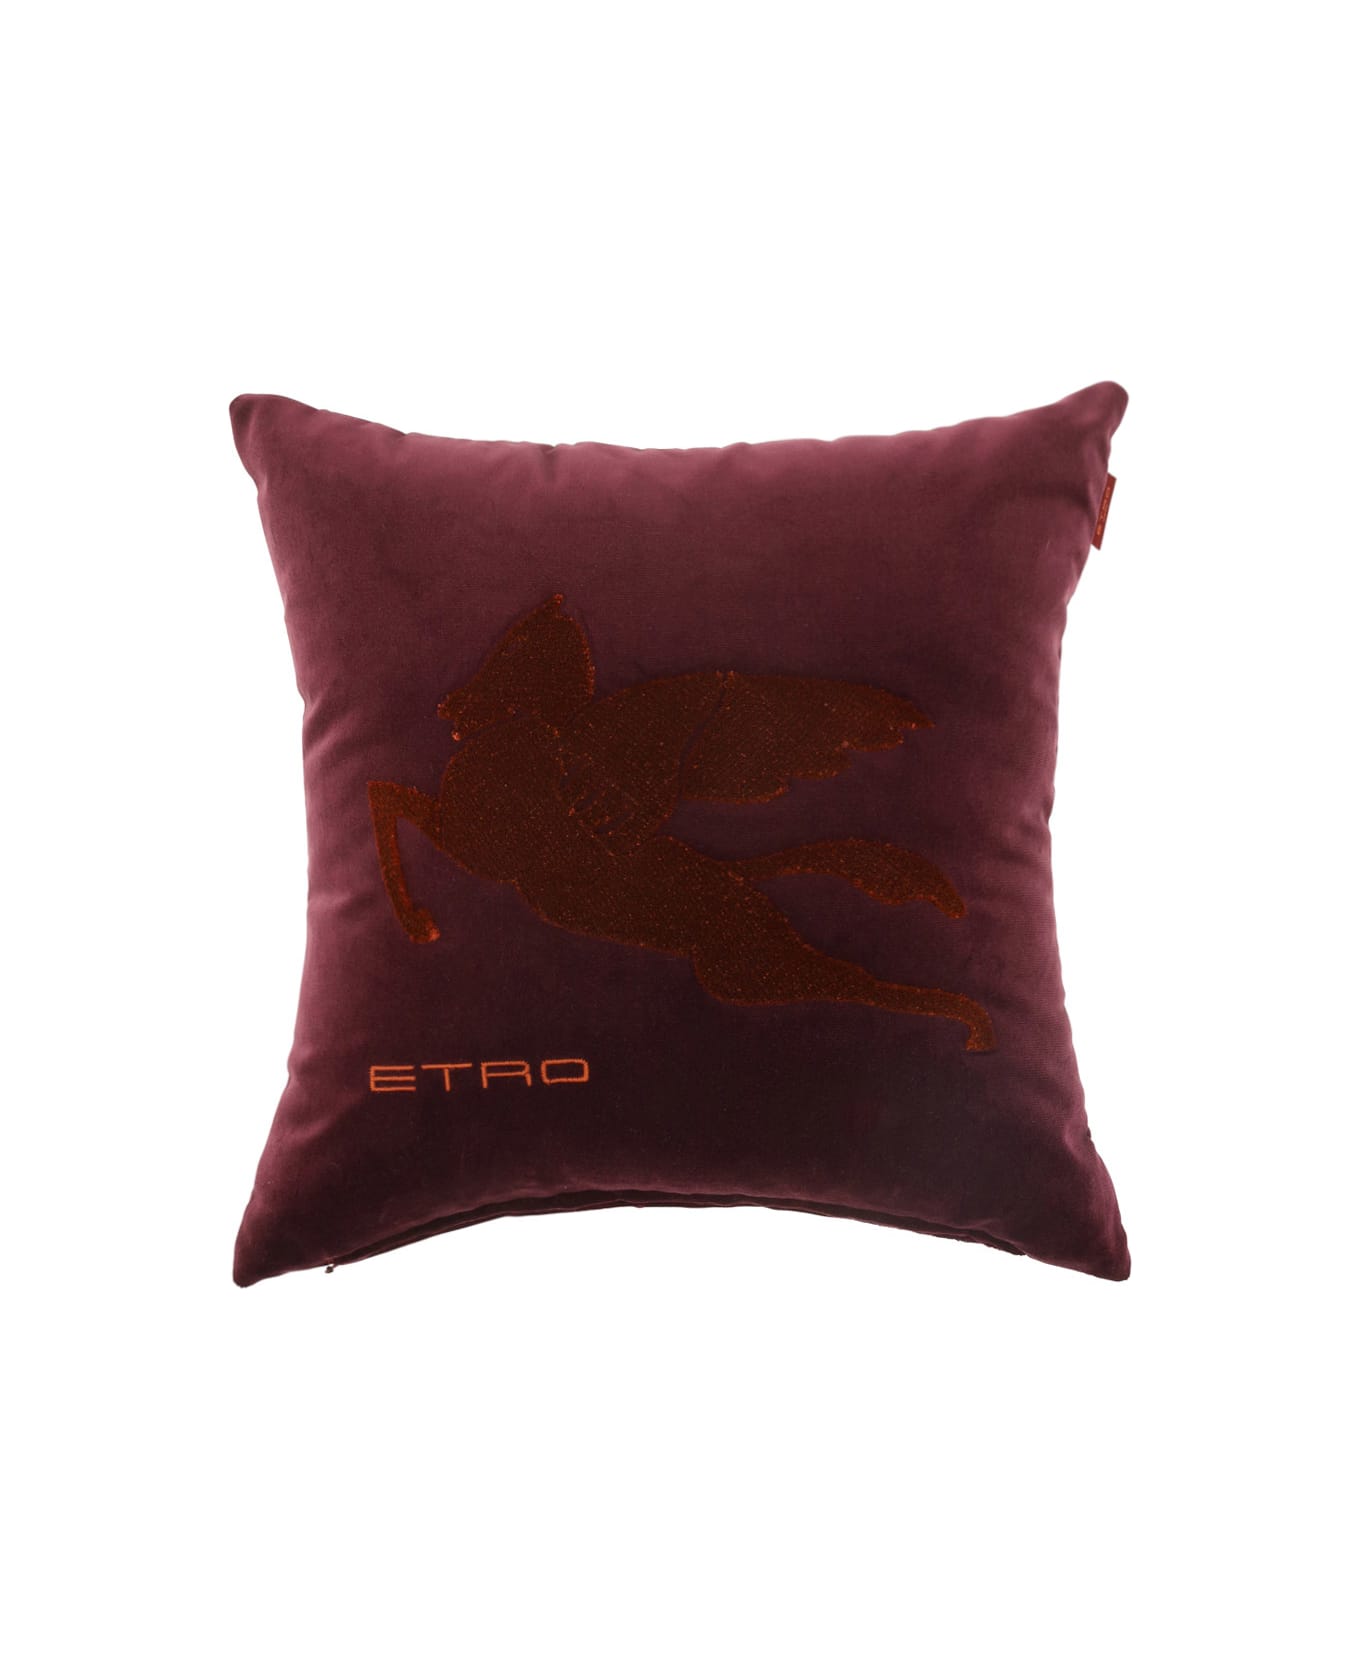 Etro Pillow - 407